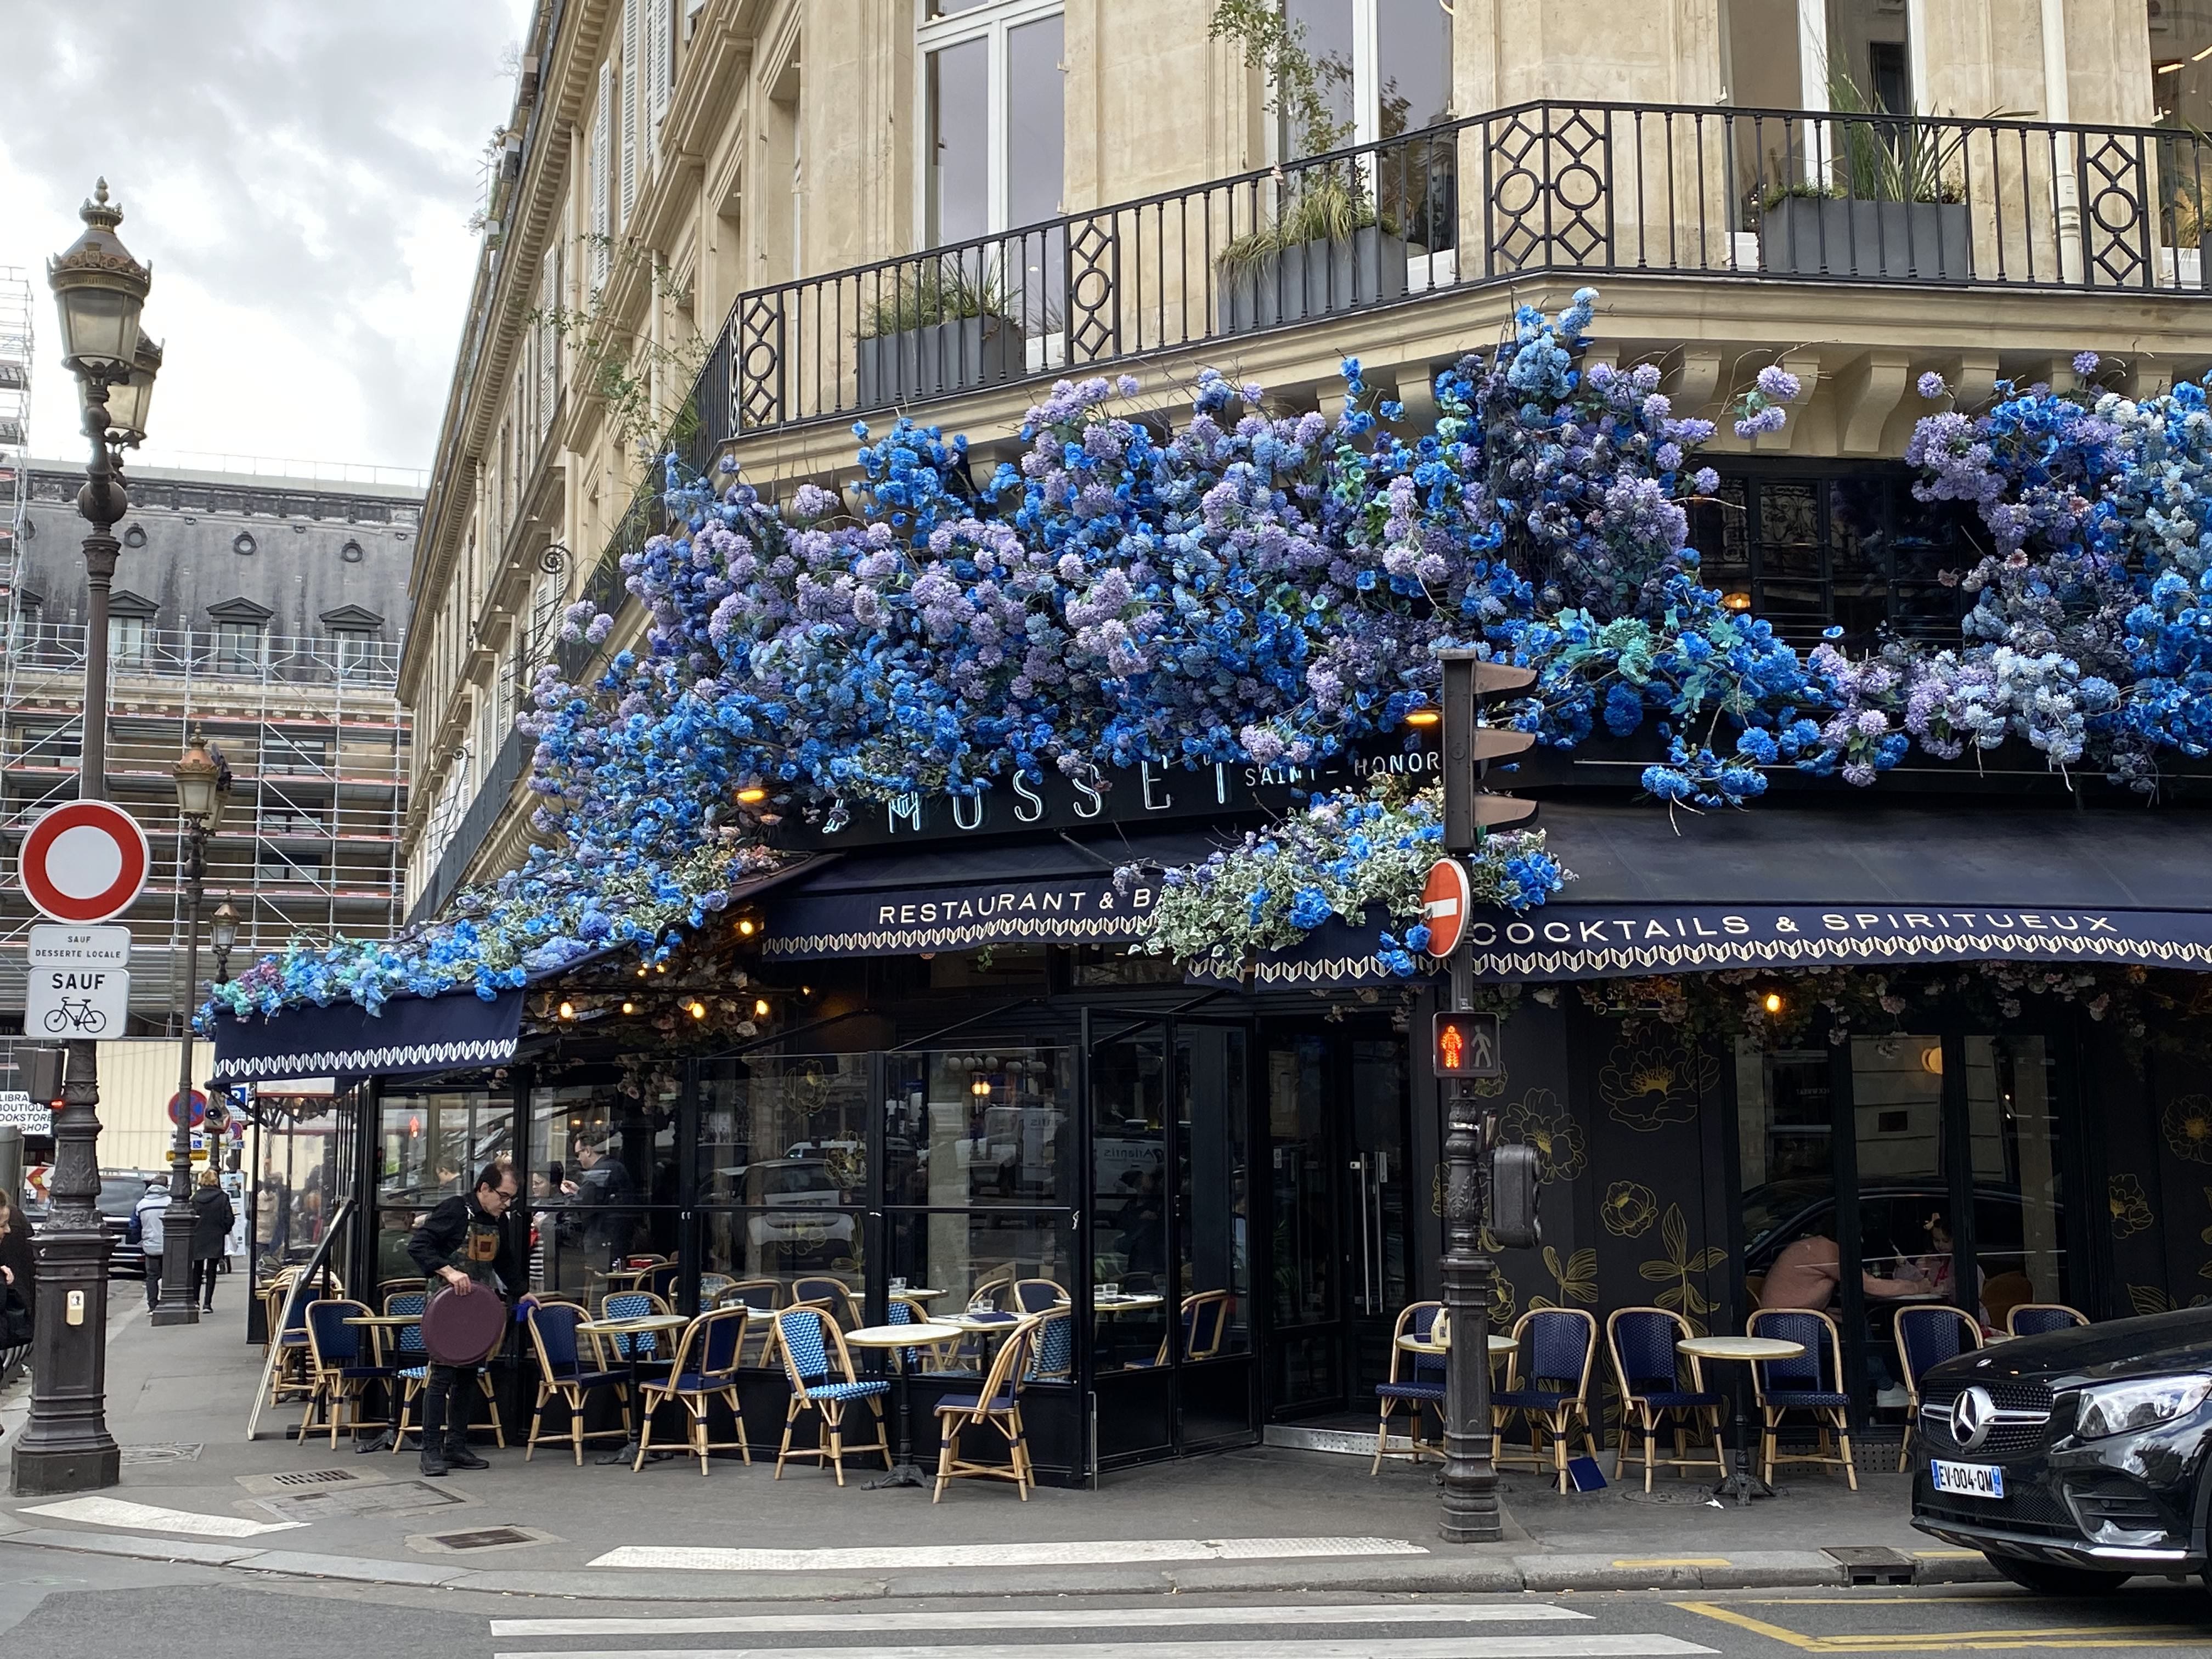 Ein französisches Café an einer Straßenecke mit Sitzgelegenheiten im Freien und blauen Blumen auf der Markise